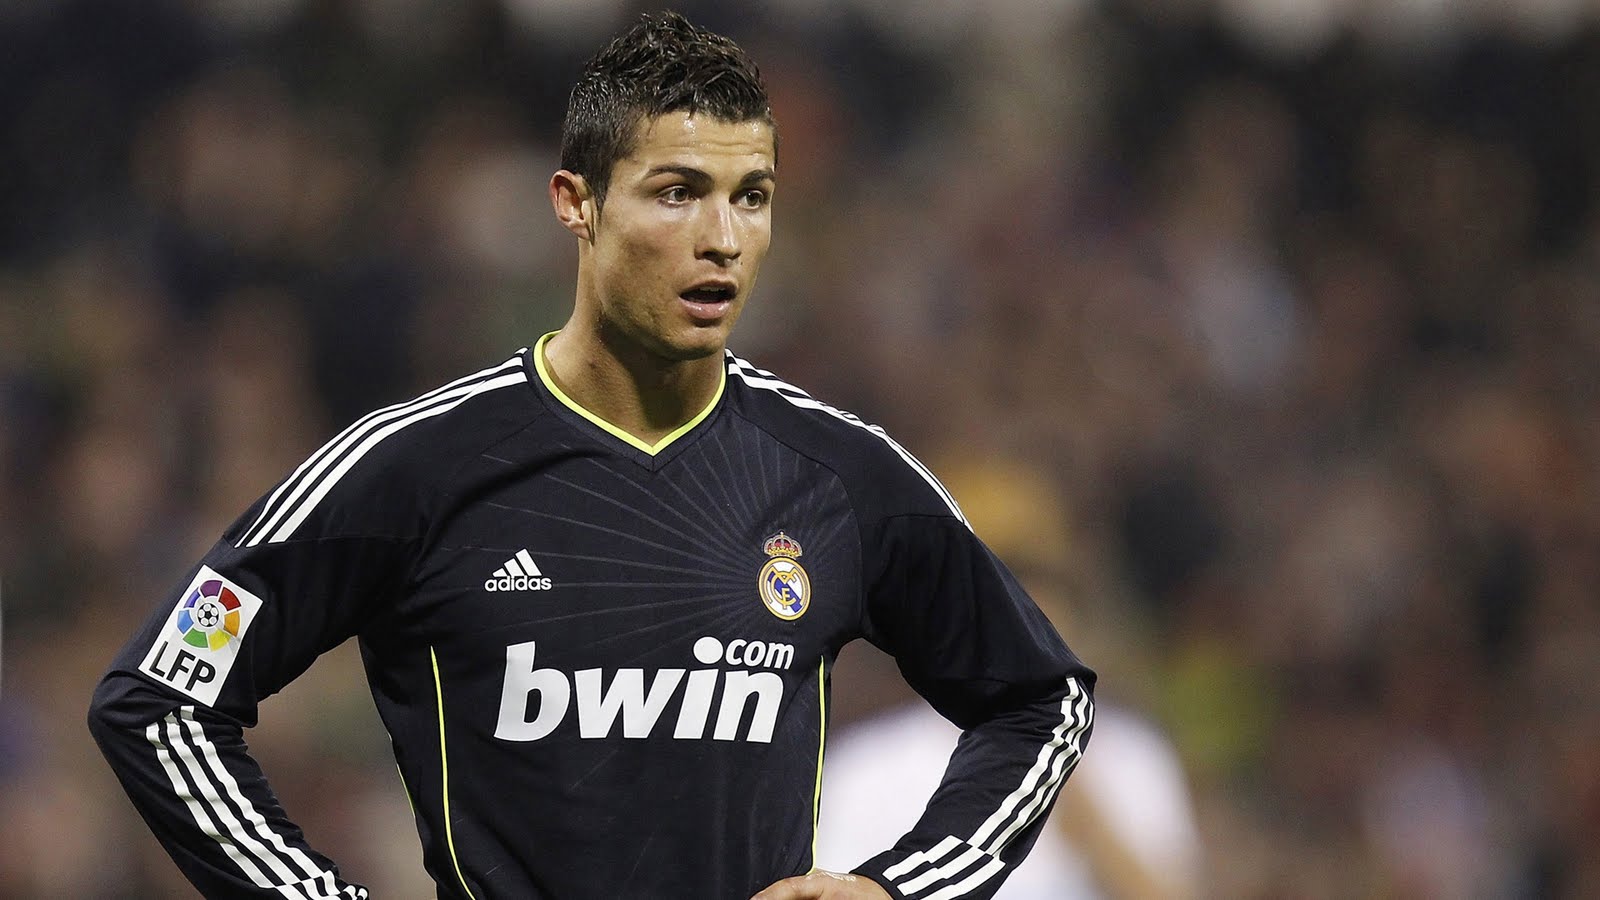 http://2.bp.blogspot.com/-4zGRkKqt7Dw/TmElH3eLpvI/AAAAAAAAAIo/U3Fix-_Q9n0/s1600/Cristiano_Ronaldo_Real_Madrid-1920x1080-HDTV-1080p.jpg